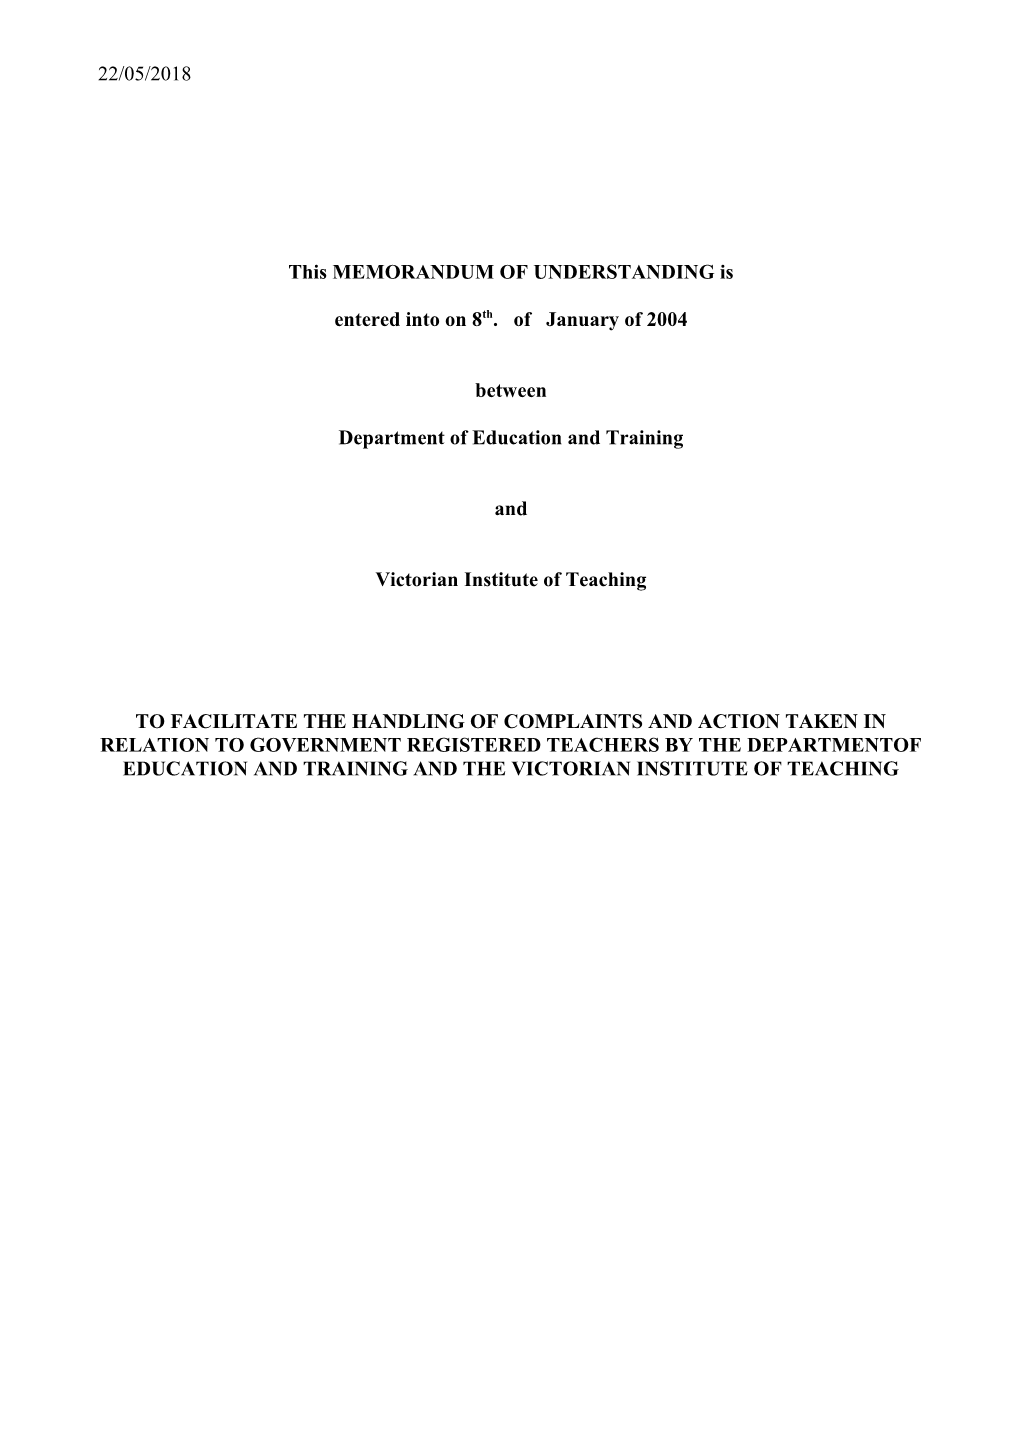 Memorandum of Understanding Between DEECD and Victorian Institute of Teaching